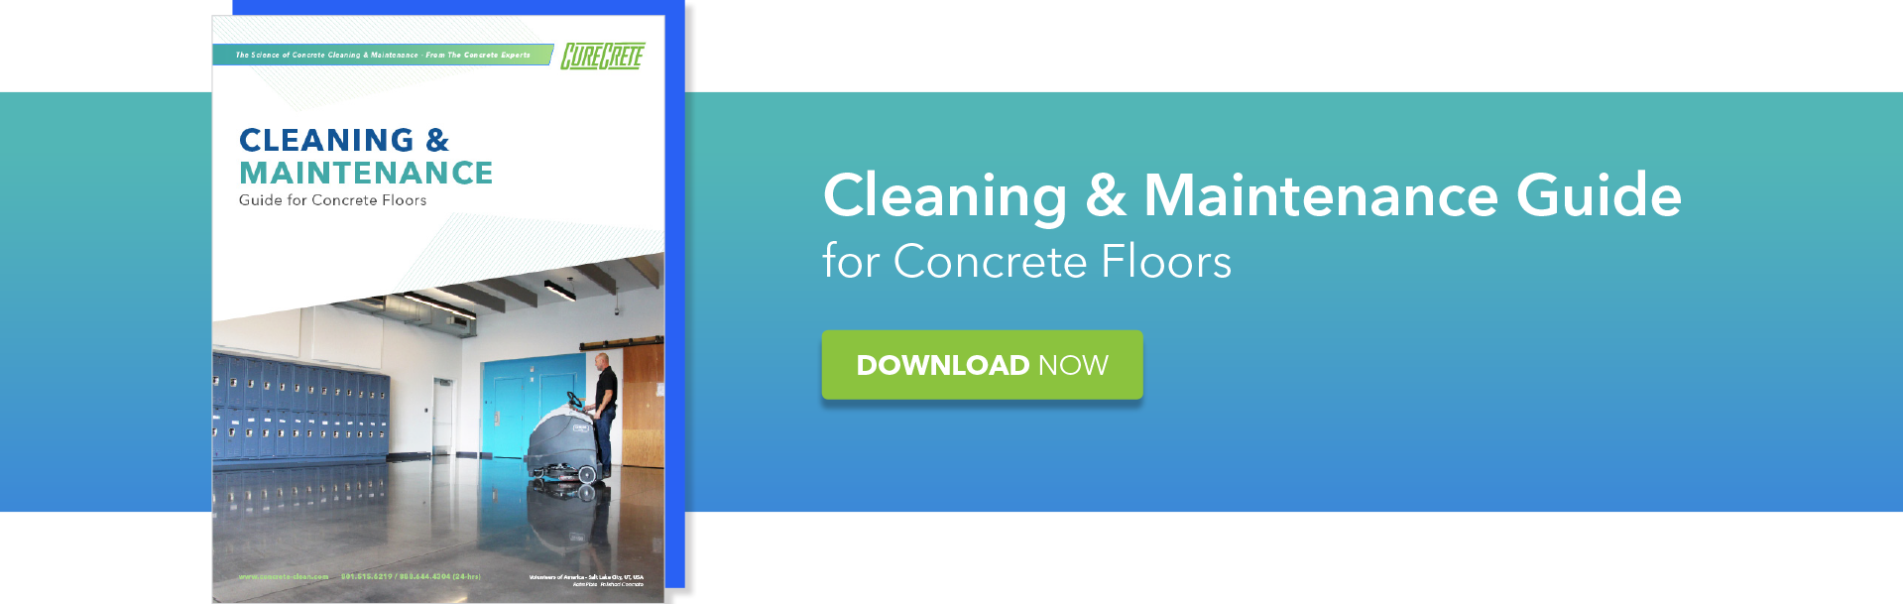 Concrete Cleaner, Concrete Cleaning, Concrete Maintenance